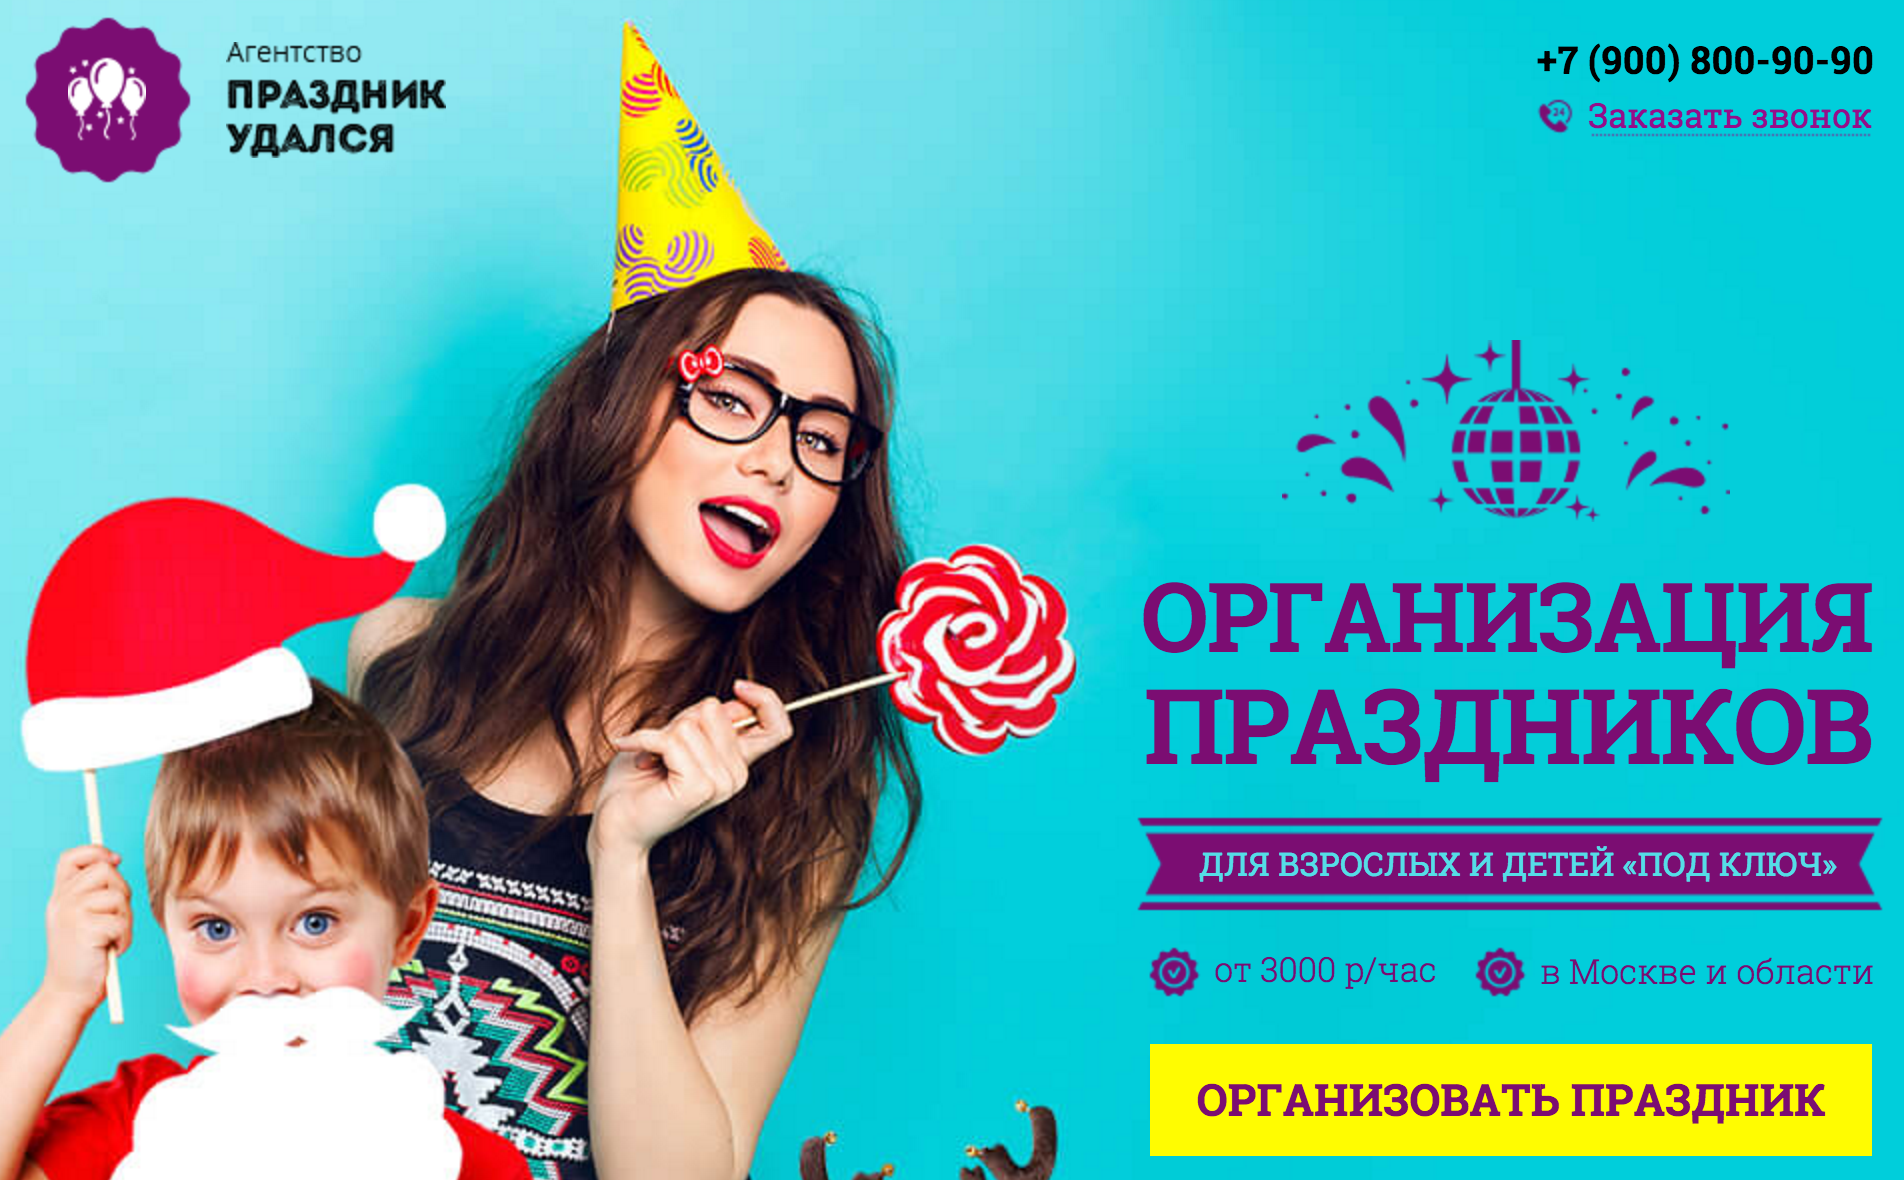 Бизнес на организации праздников с нуля в 2022 году – biznesideas.ru